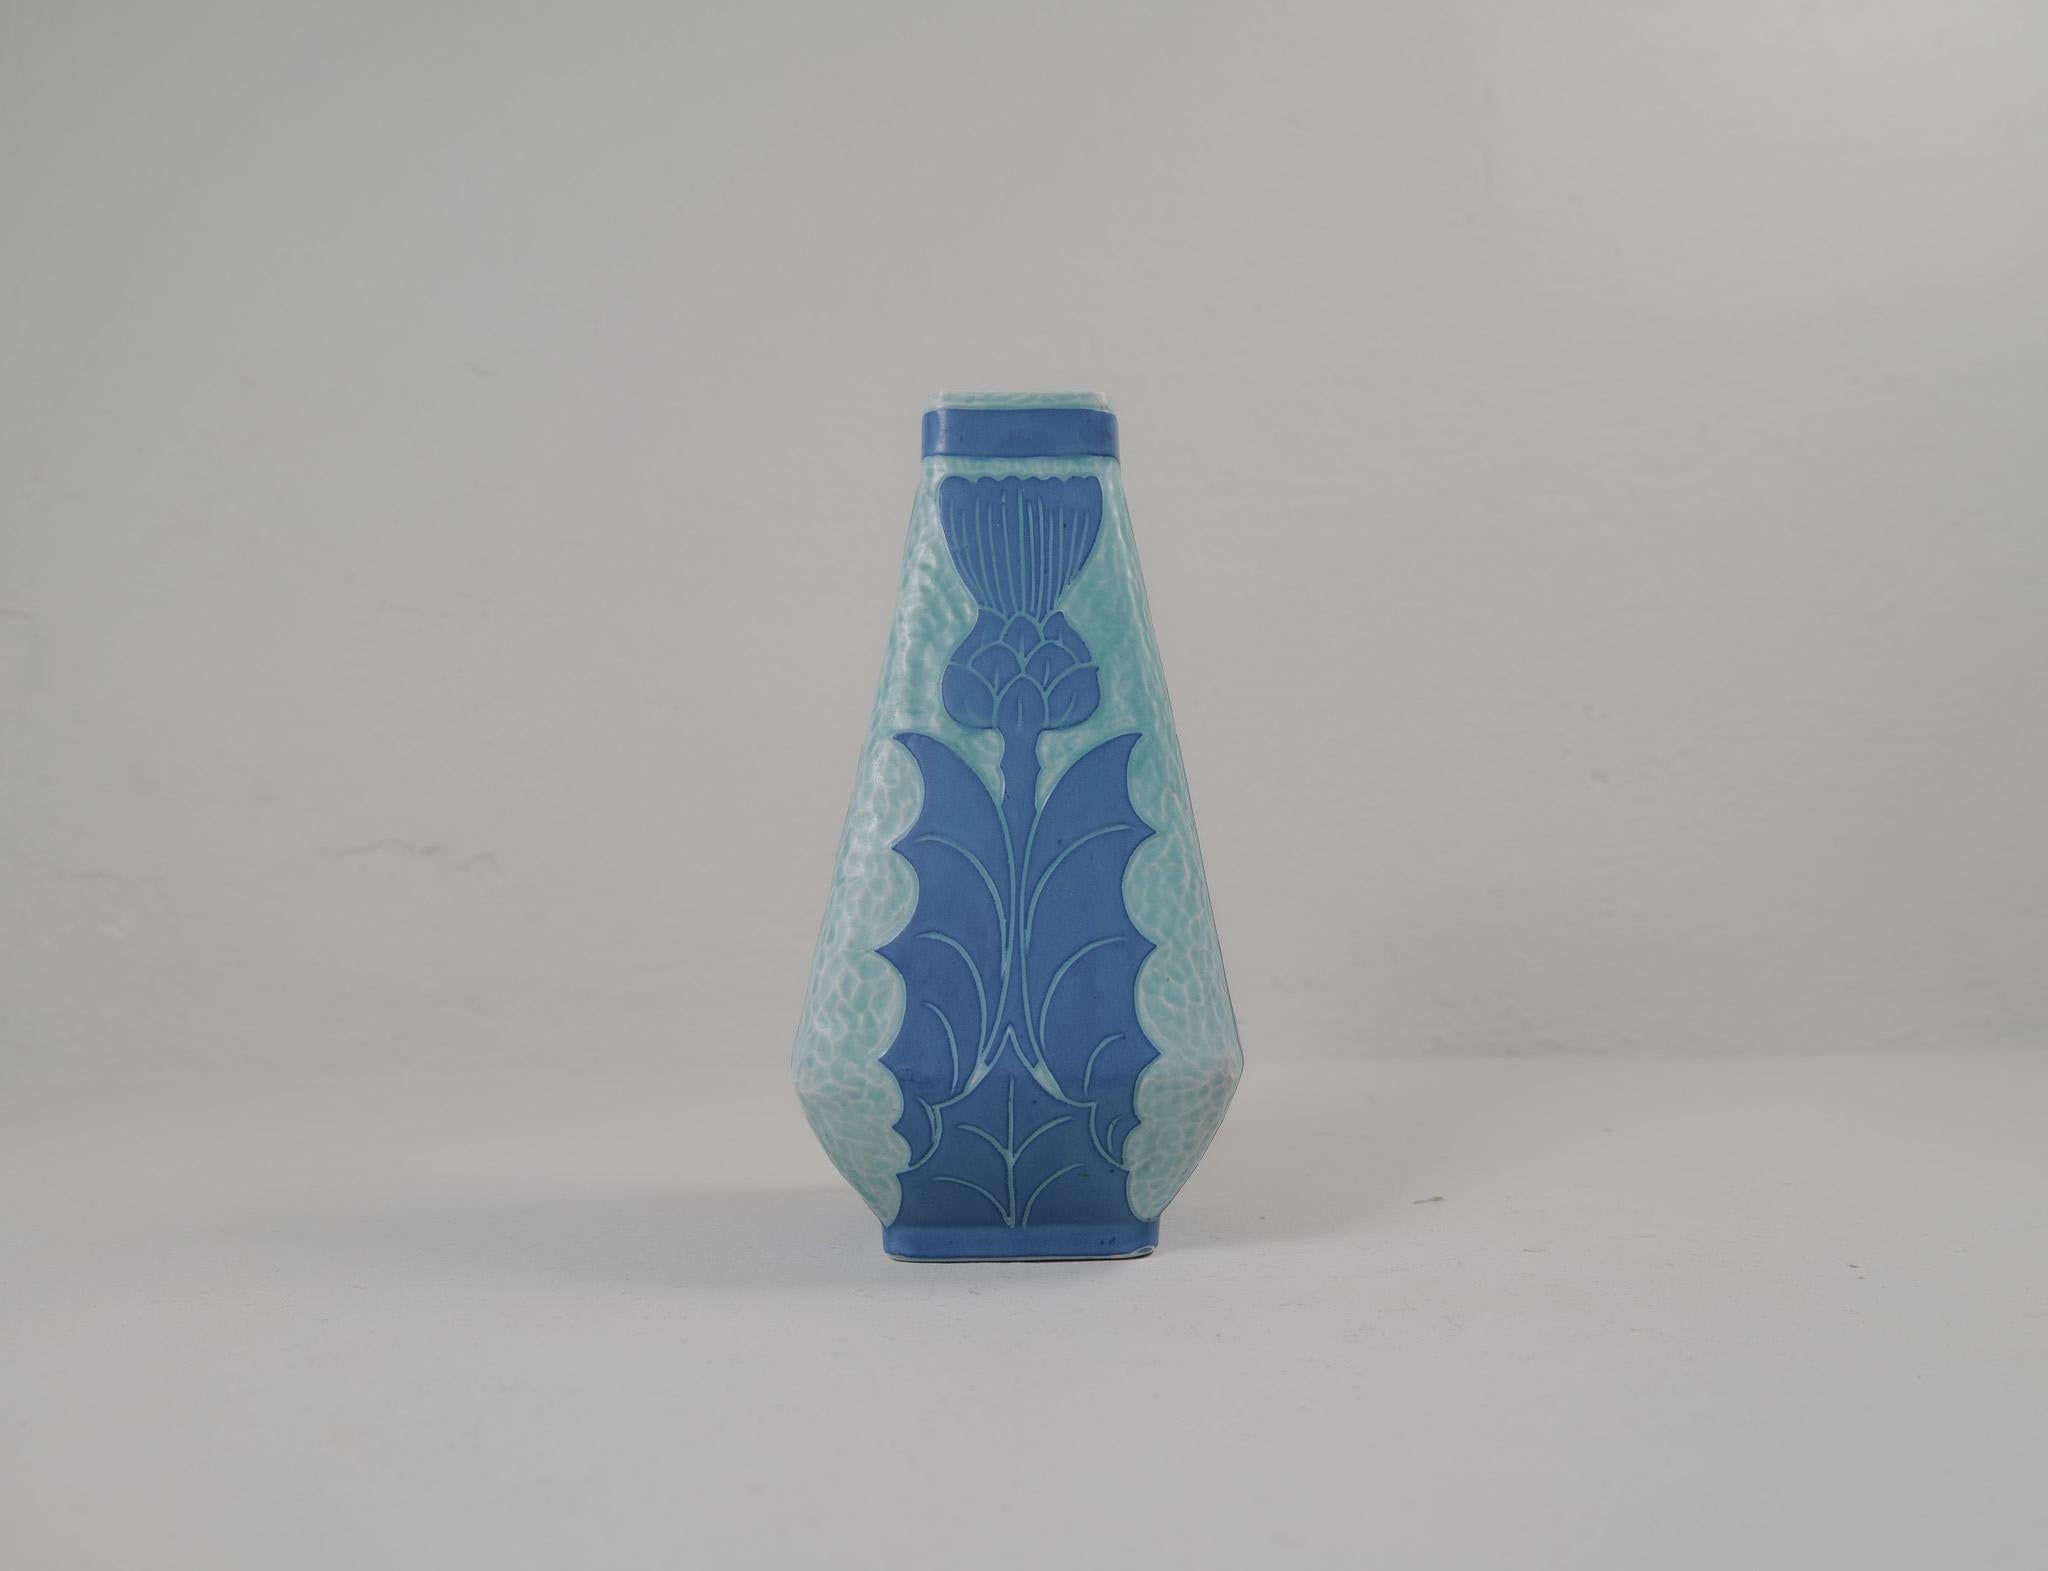 Sgraffito-Vase im Art déco-Stil mit Blumenmotiv, von Josef Ekberg für Gustavsberg.
Sgraffito ist eine Art, zwei Schichten zu einem Muster zu verbinden. Die zweite Schicht wird abgekratzt und übrig bleibt ein hellblauer Hintergrund mit einem schönen